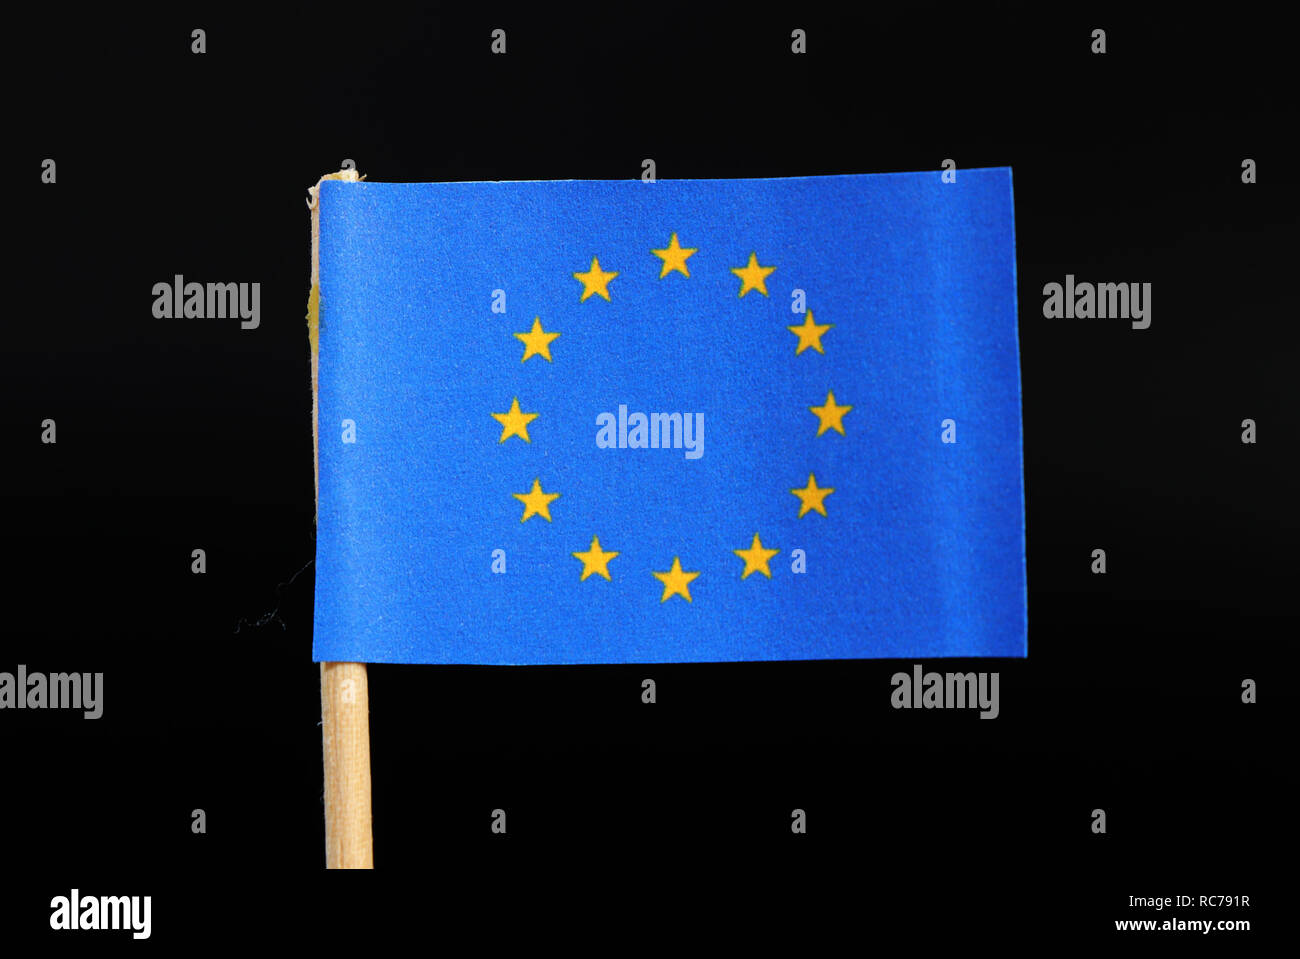 Cờ chính thức EU với những ngôi sao vàng trên nền lục địa xanh sẽ mang đến cho bạn một cảm giác kiêu hãnh và tự hào về sự đoàn kết châu Âu. Hãy xem ảnh liên quan để khám phá thêm sự nguy nga của cờ EU.